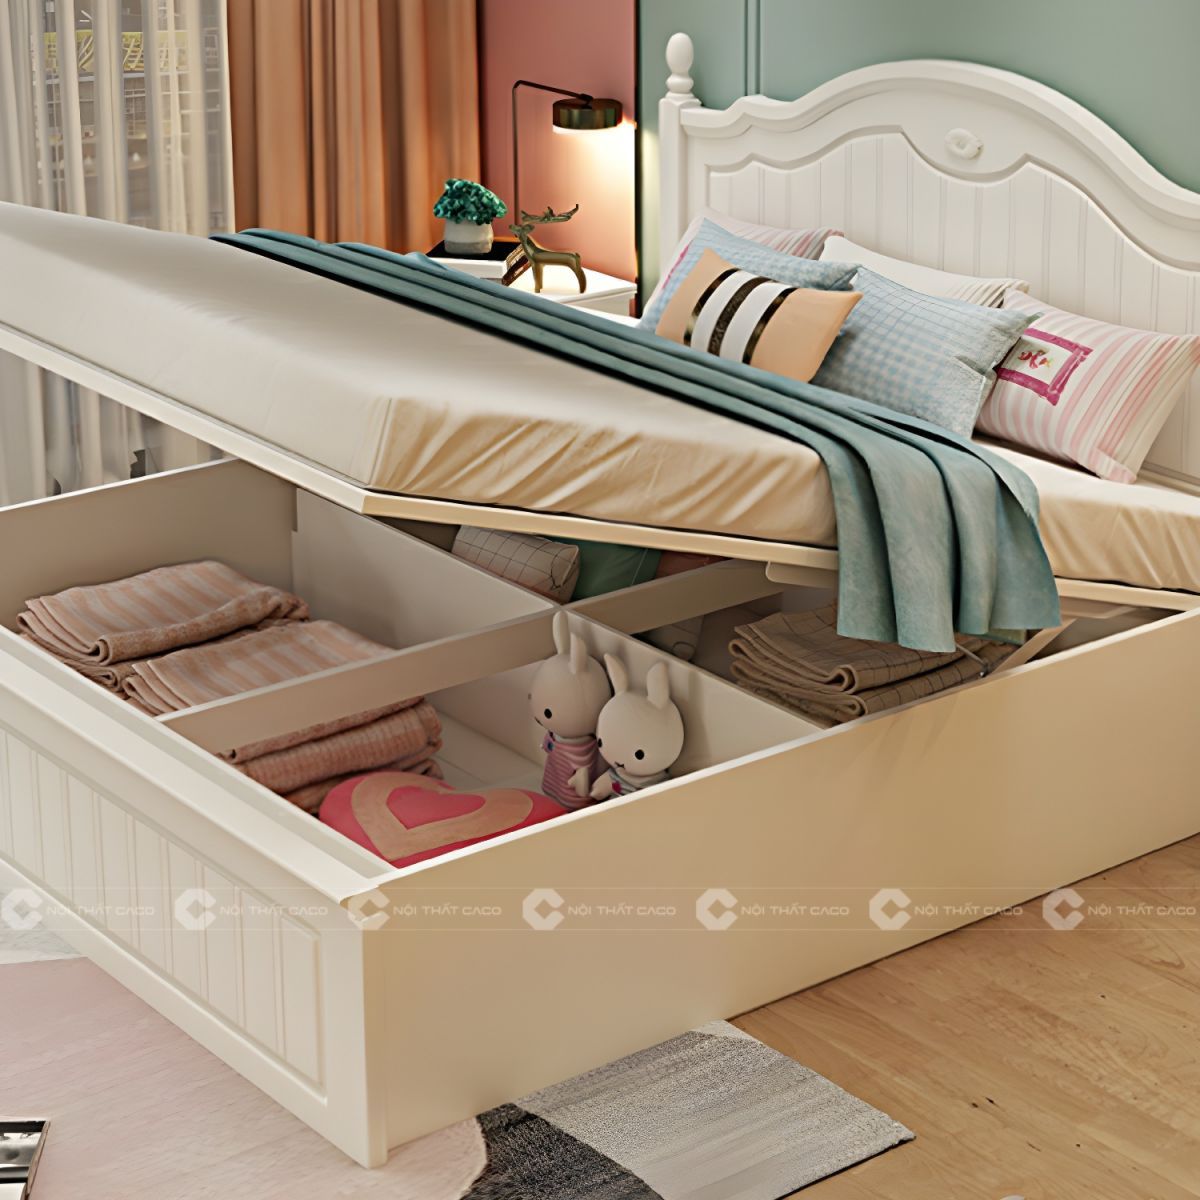 Giường ngủ gỗ tự nhiên ngăn chứa đồ thông minh